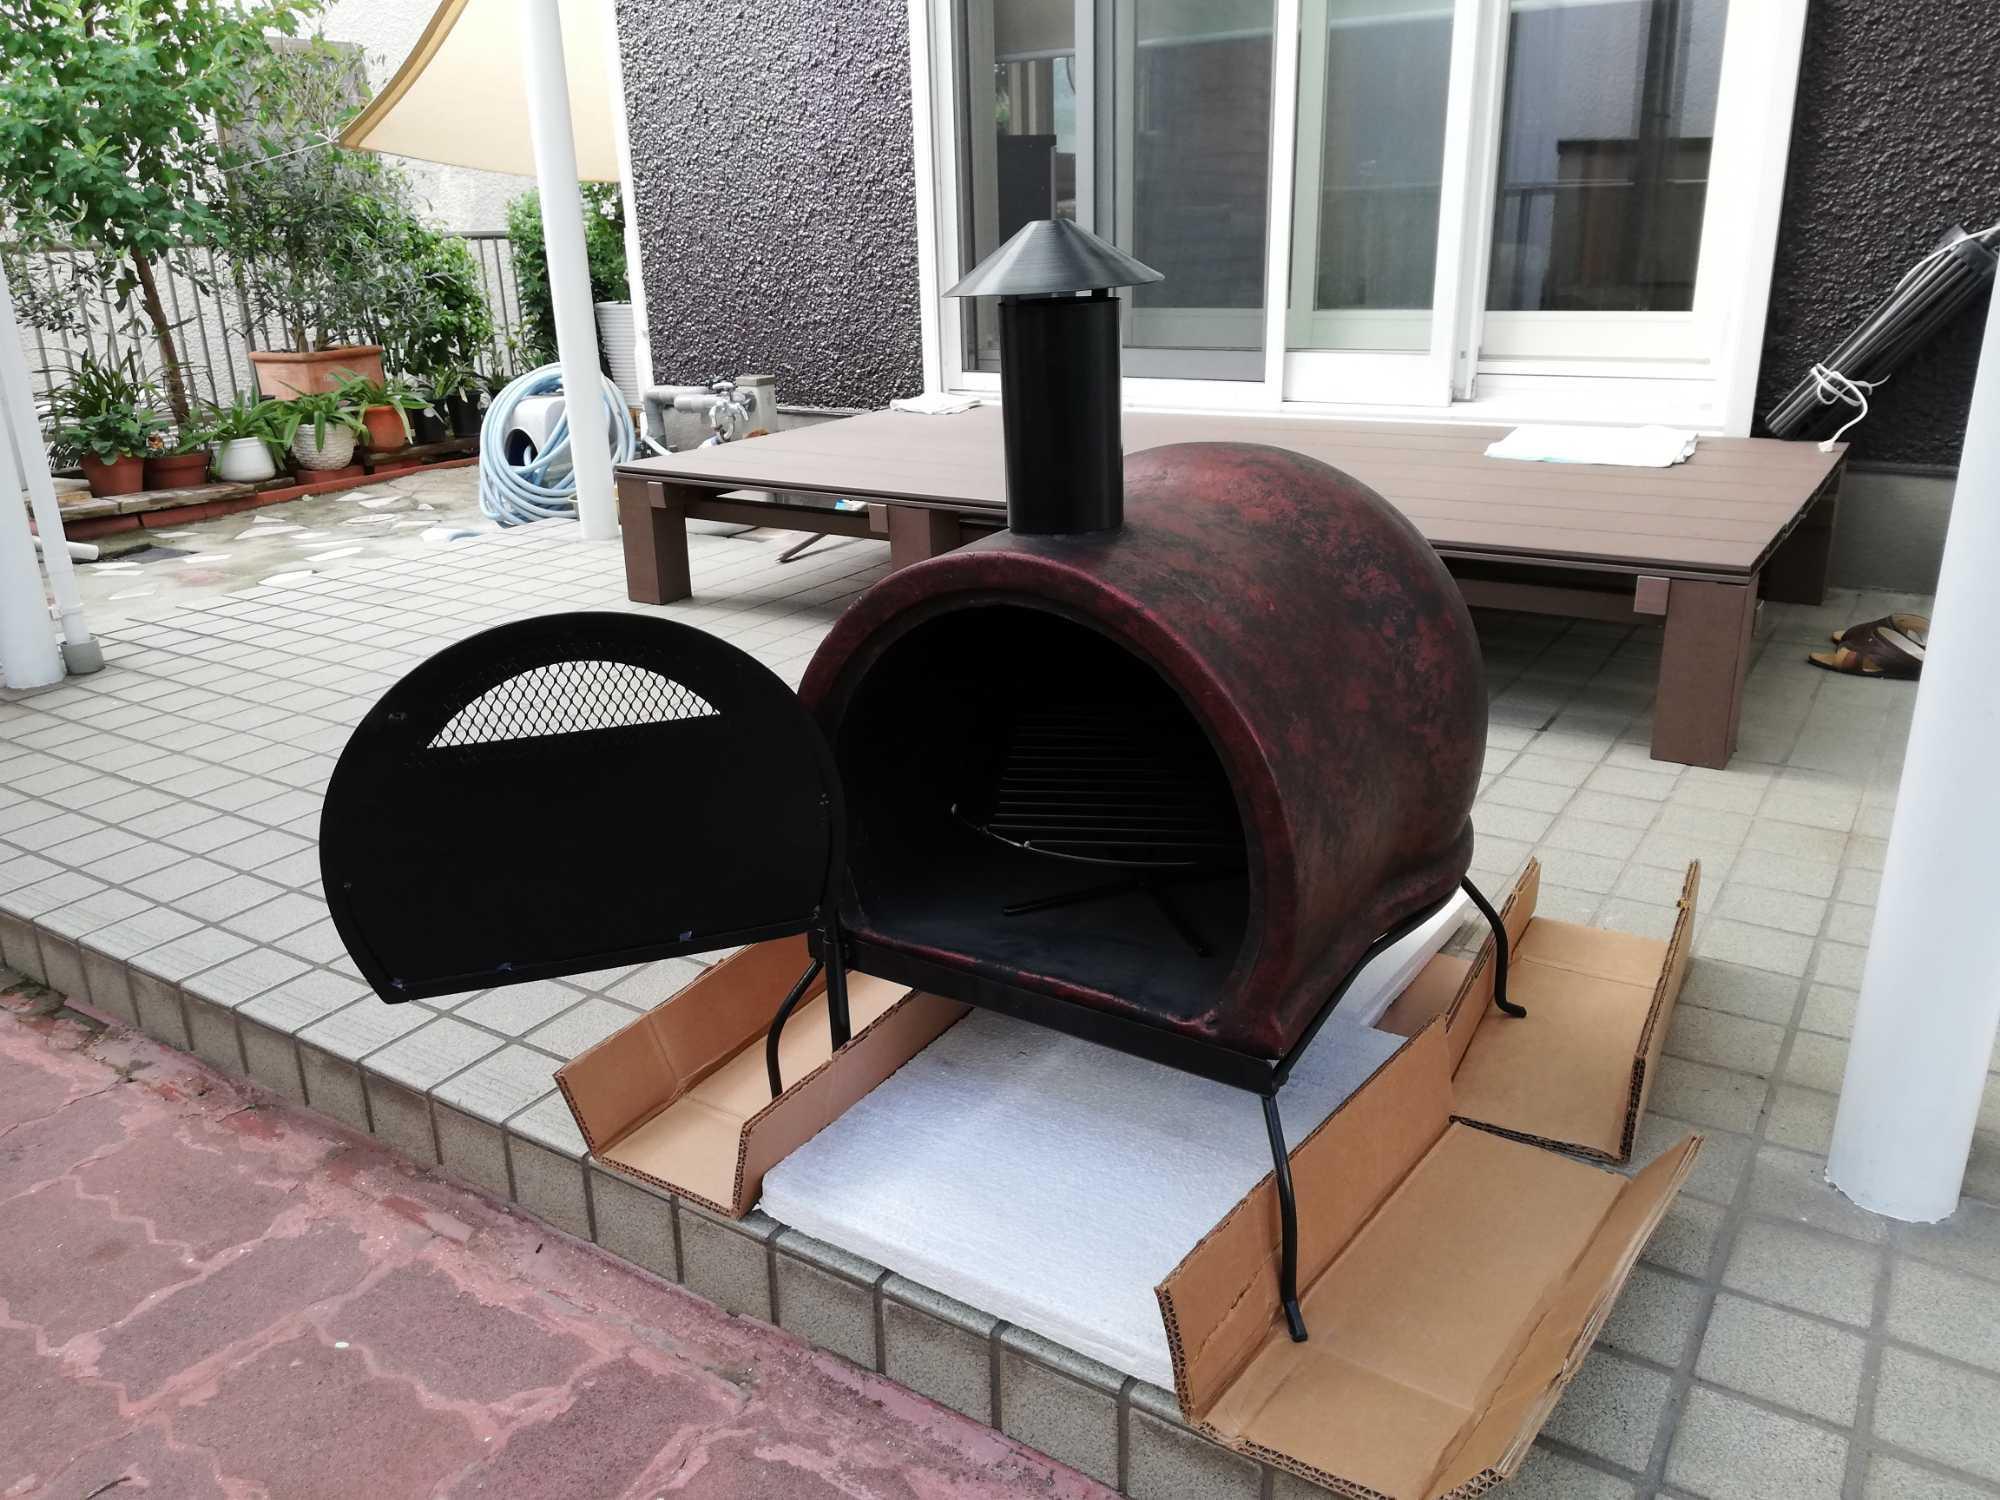 メキシコ製 ピザ窯チムニー MC-47 ピザ窯 家庭用 家庭用 ピザ焼き窯 窯